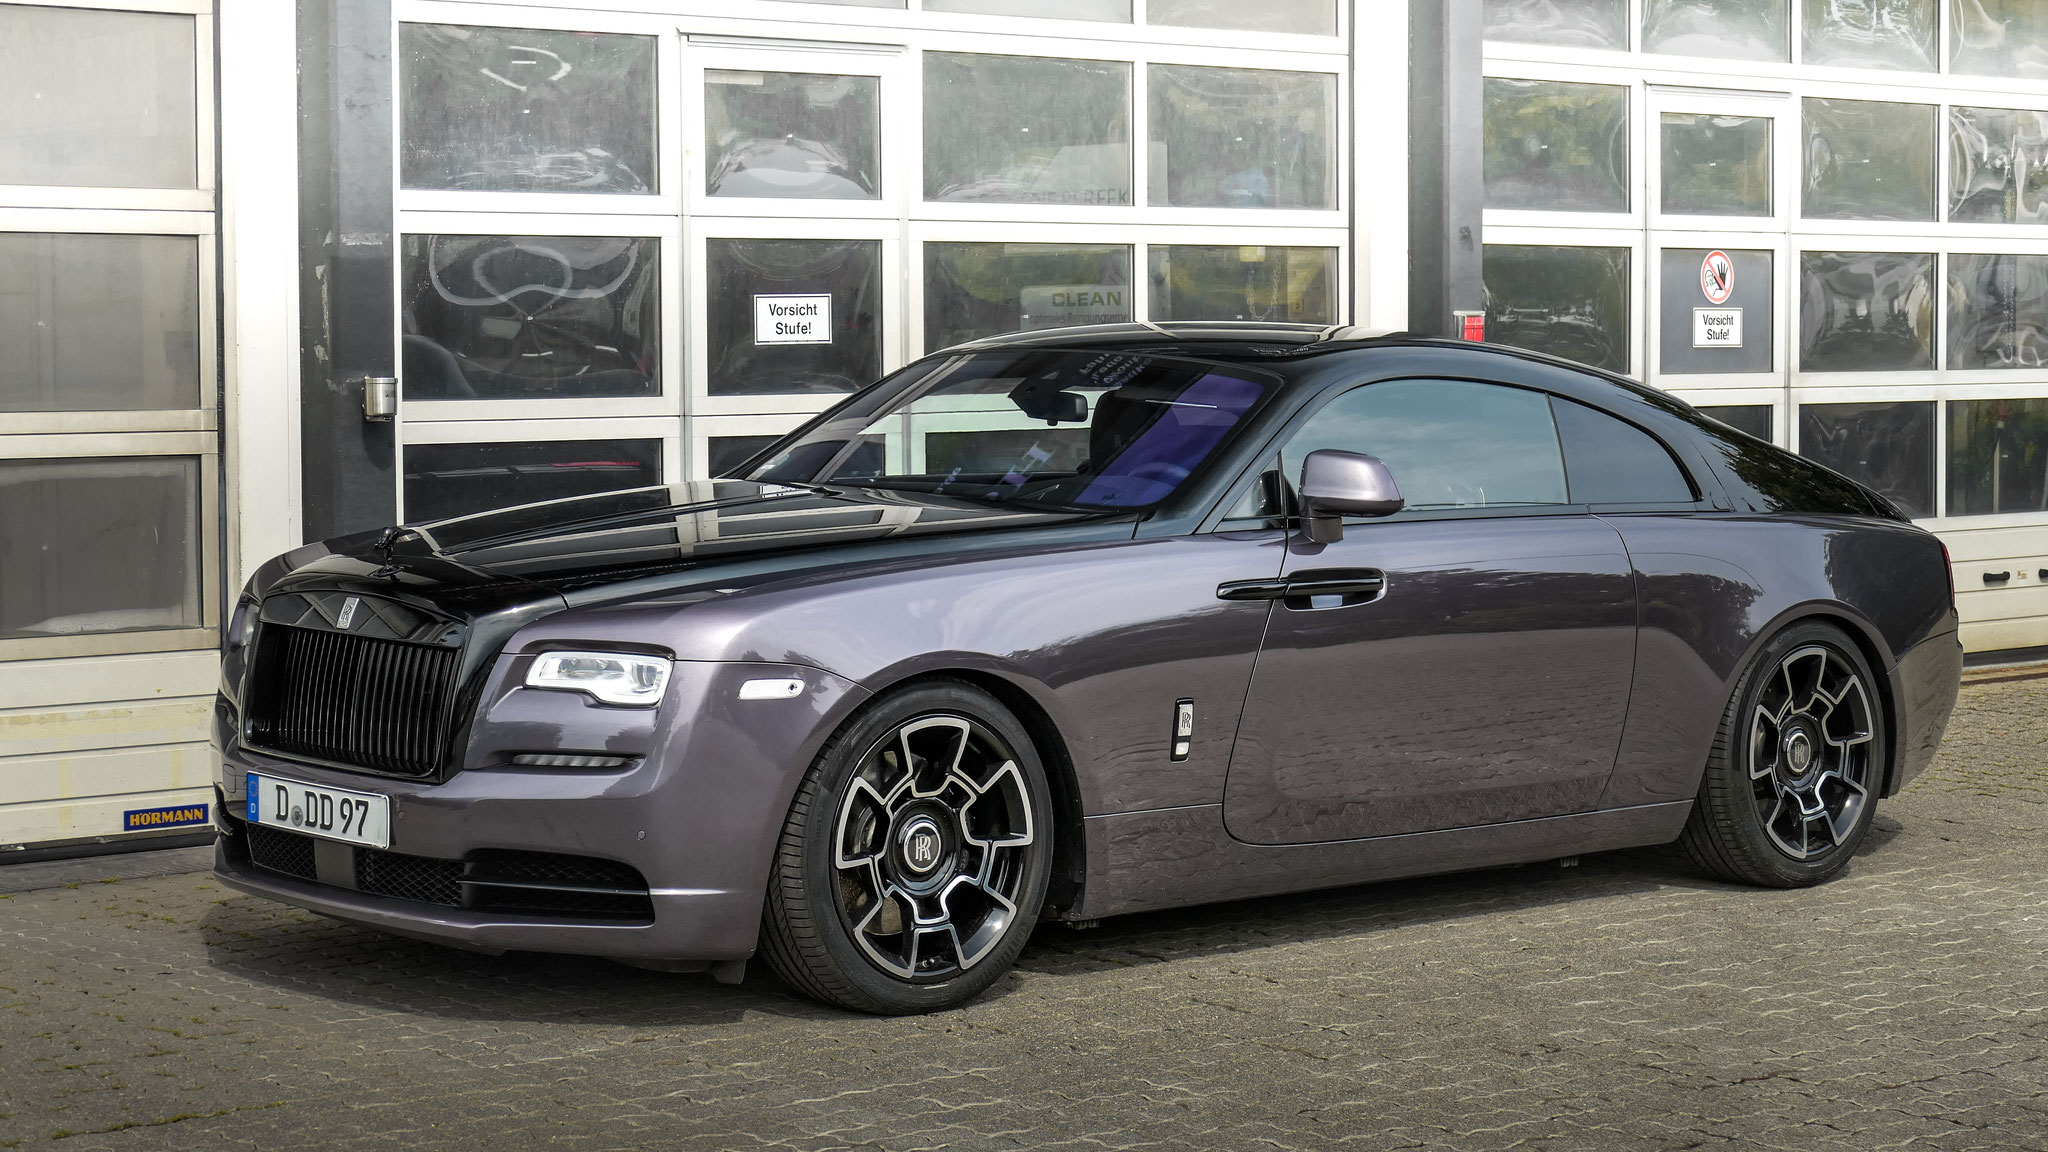 Rolls Royce Wraith - D-DD97